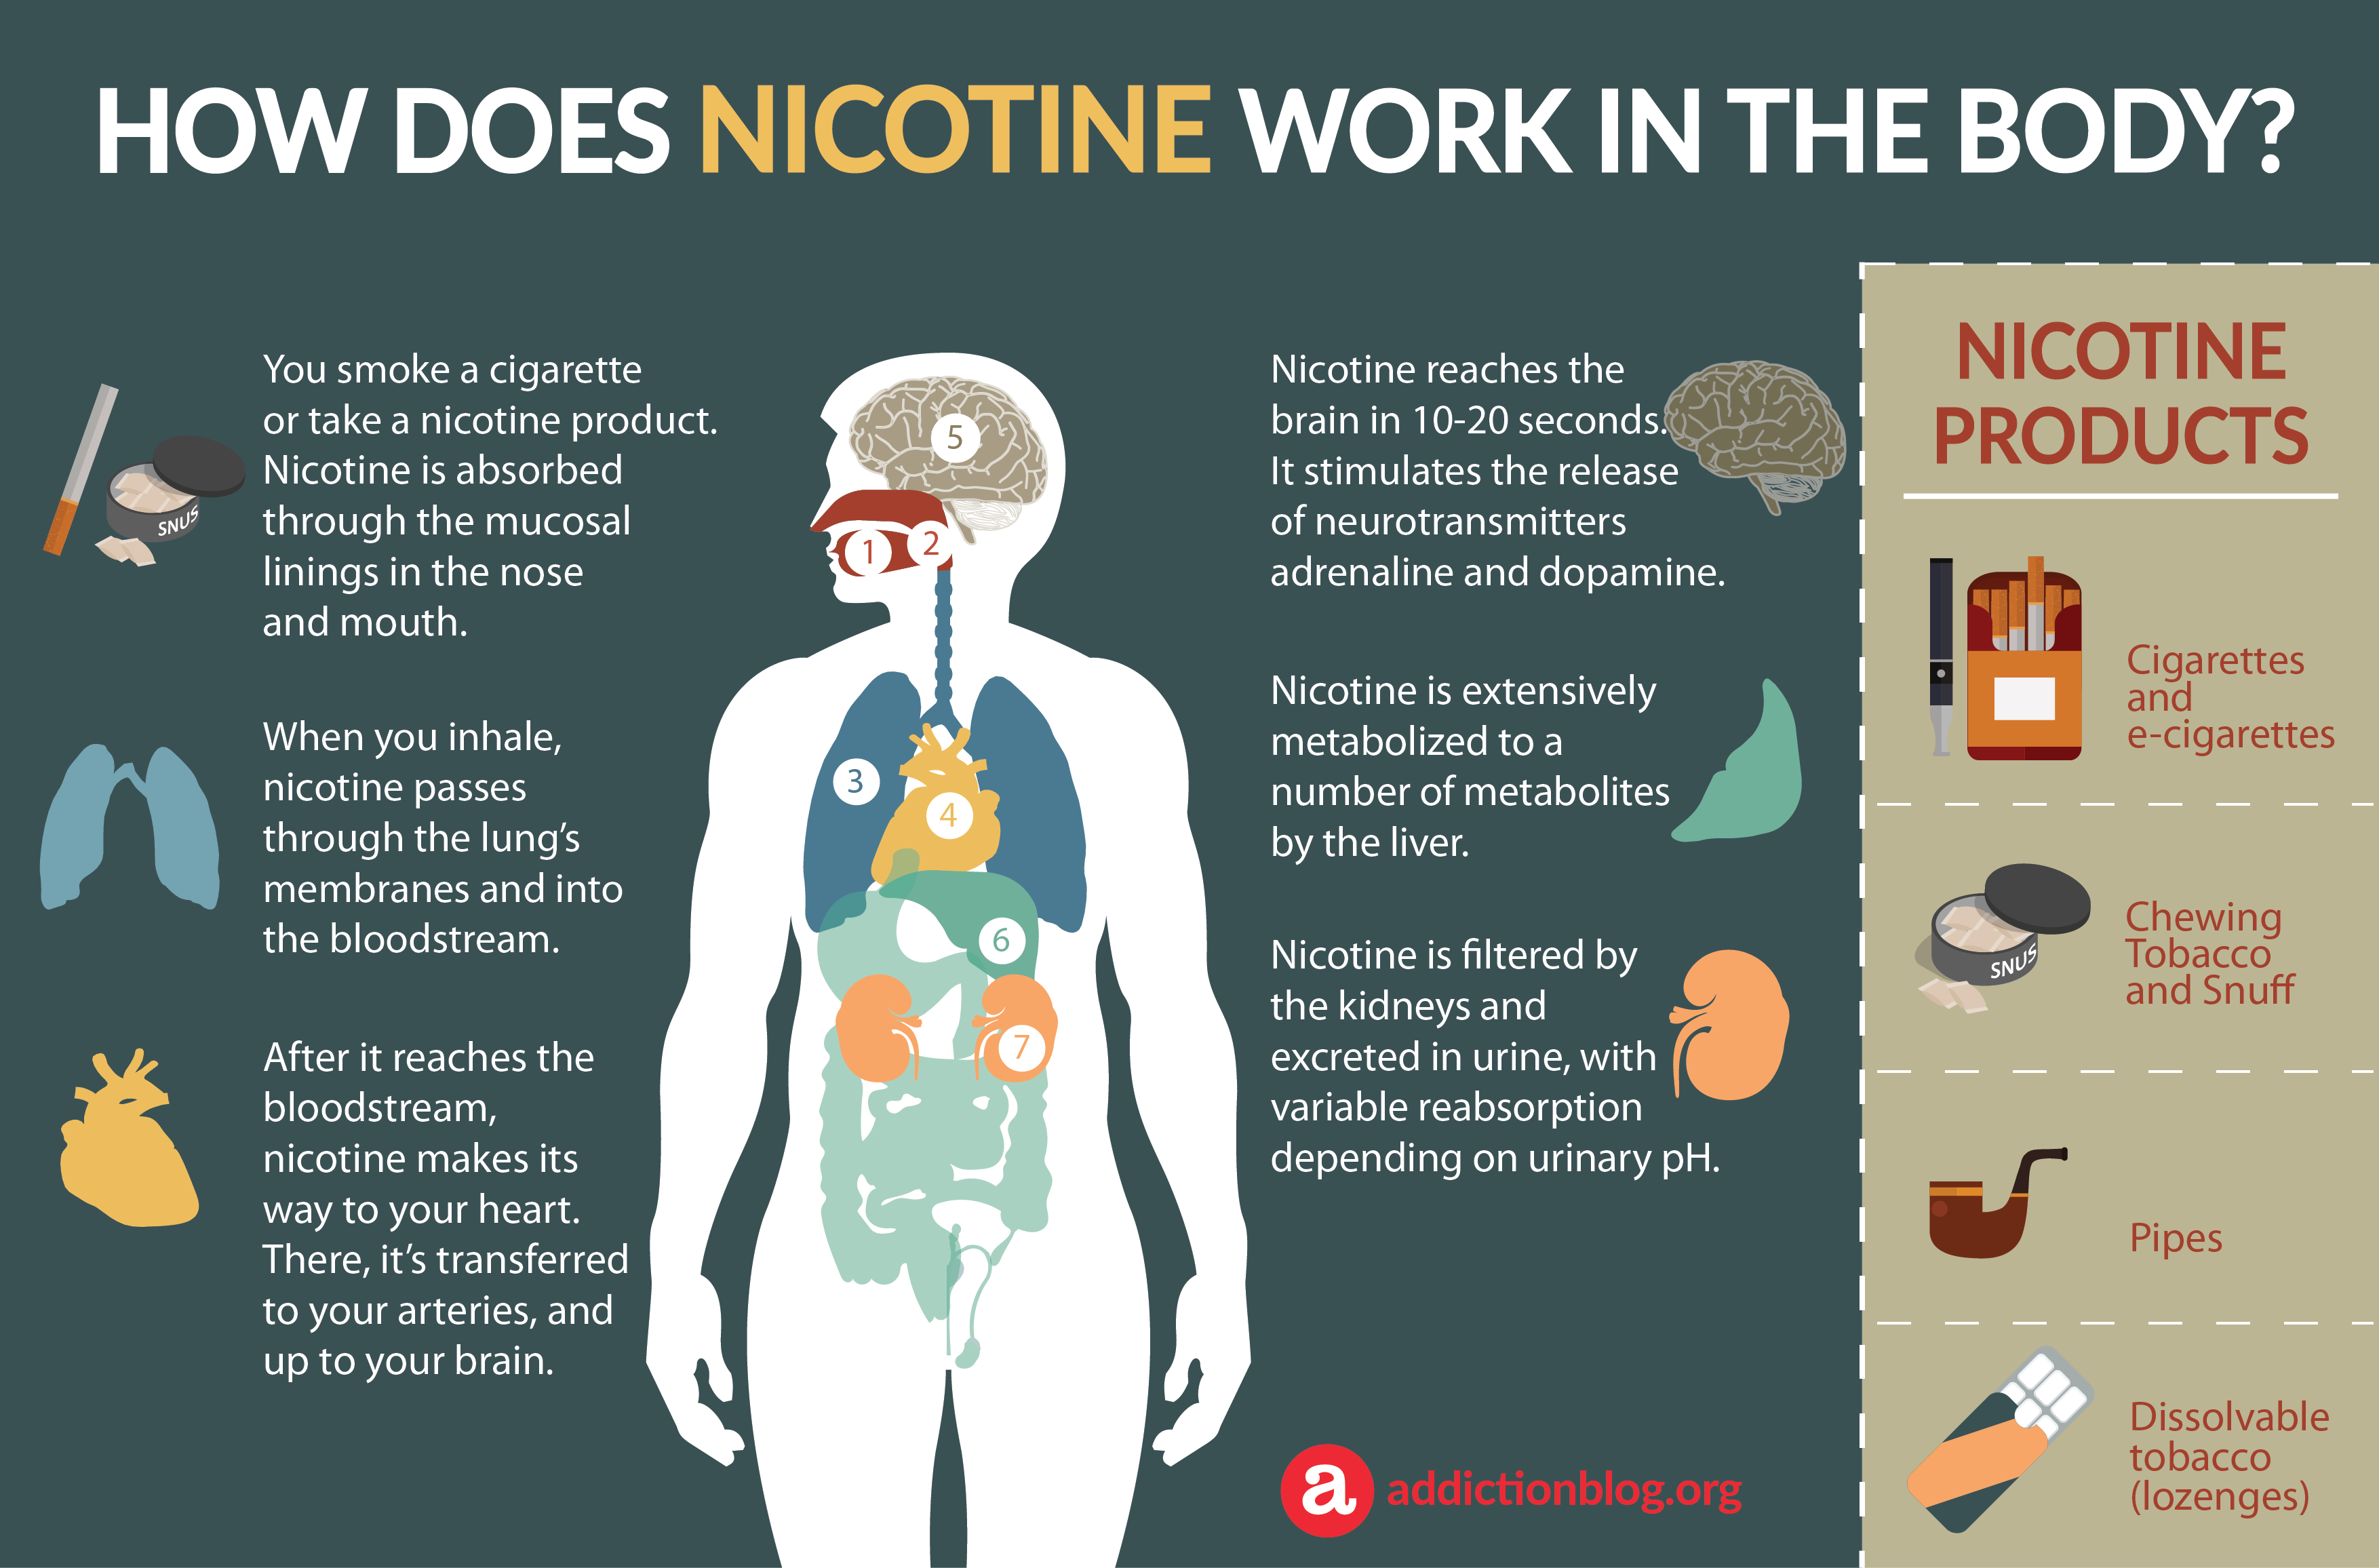 Does Nicotine Increase Metabolism?